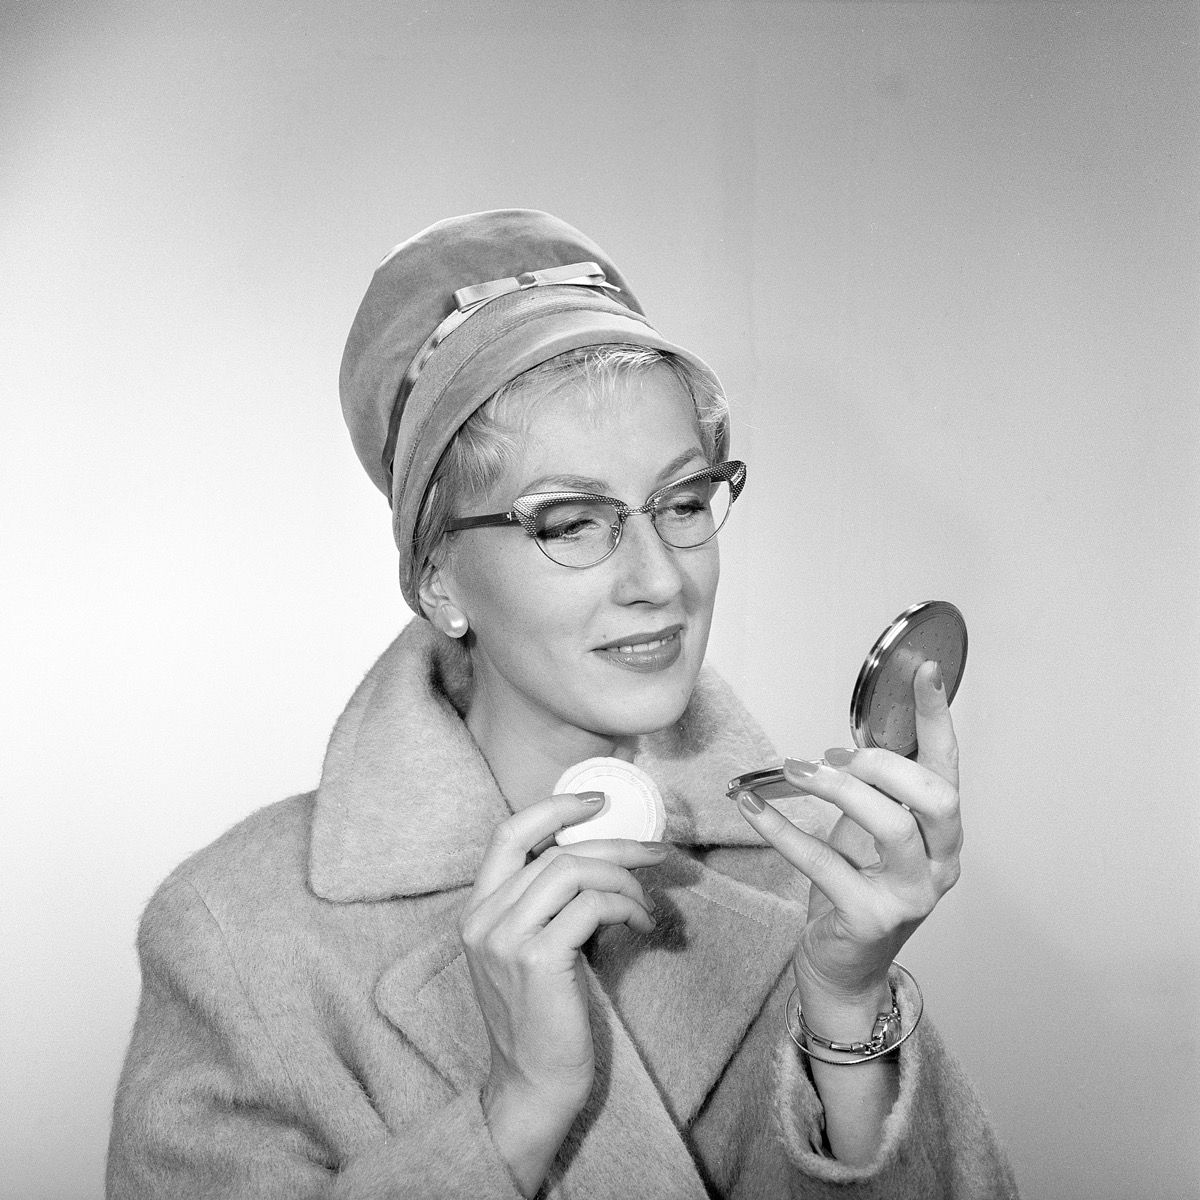 Maquillage des années 1950. Une jeune femme se regarde dans son miroir de poche et améliore son maquillage. Elle porte un chapeau à la mode, des lunettes typiques des années 50 et un manteau. Années 1950